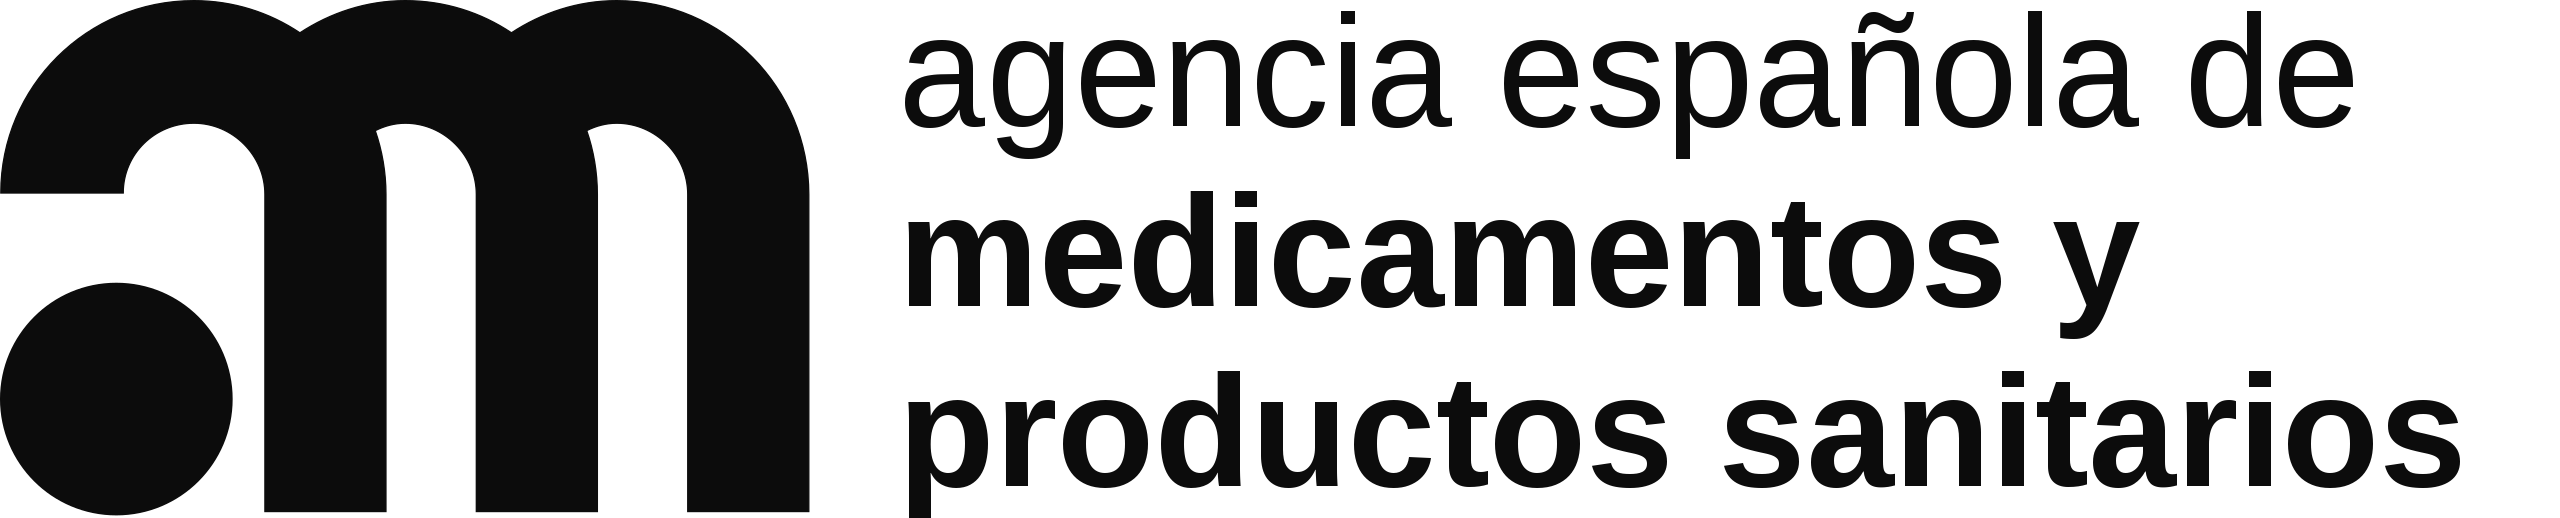 Productos certificados por la Agencia Española de Medicamentos y Productos Sanitarios